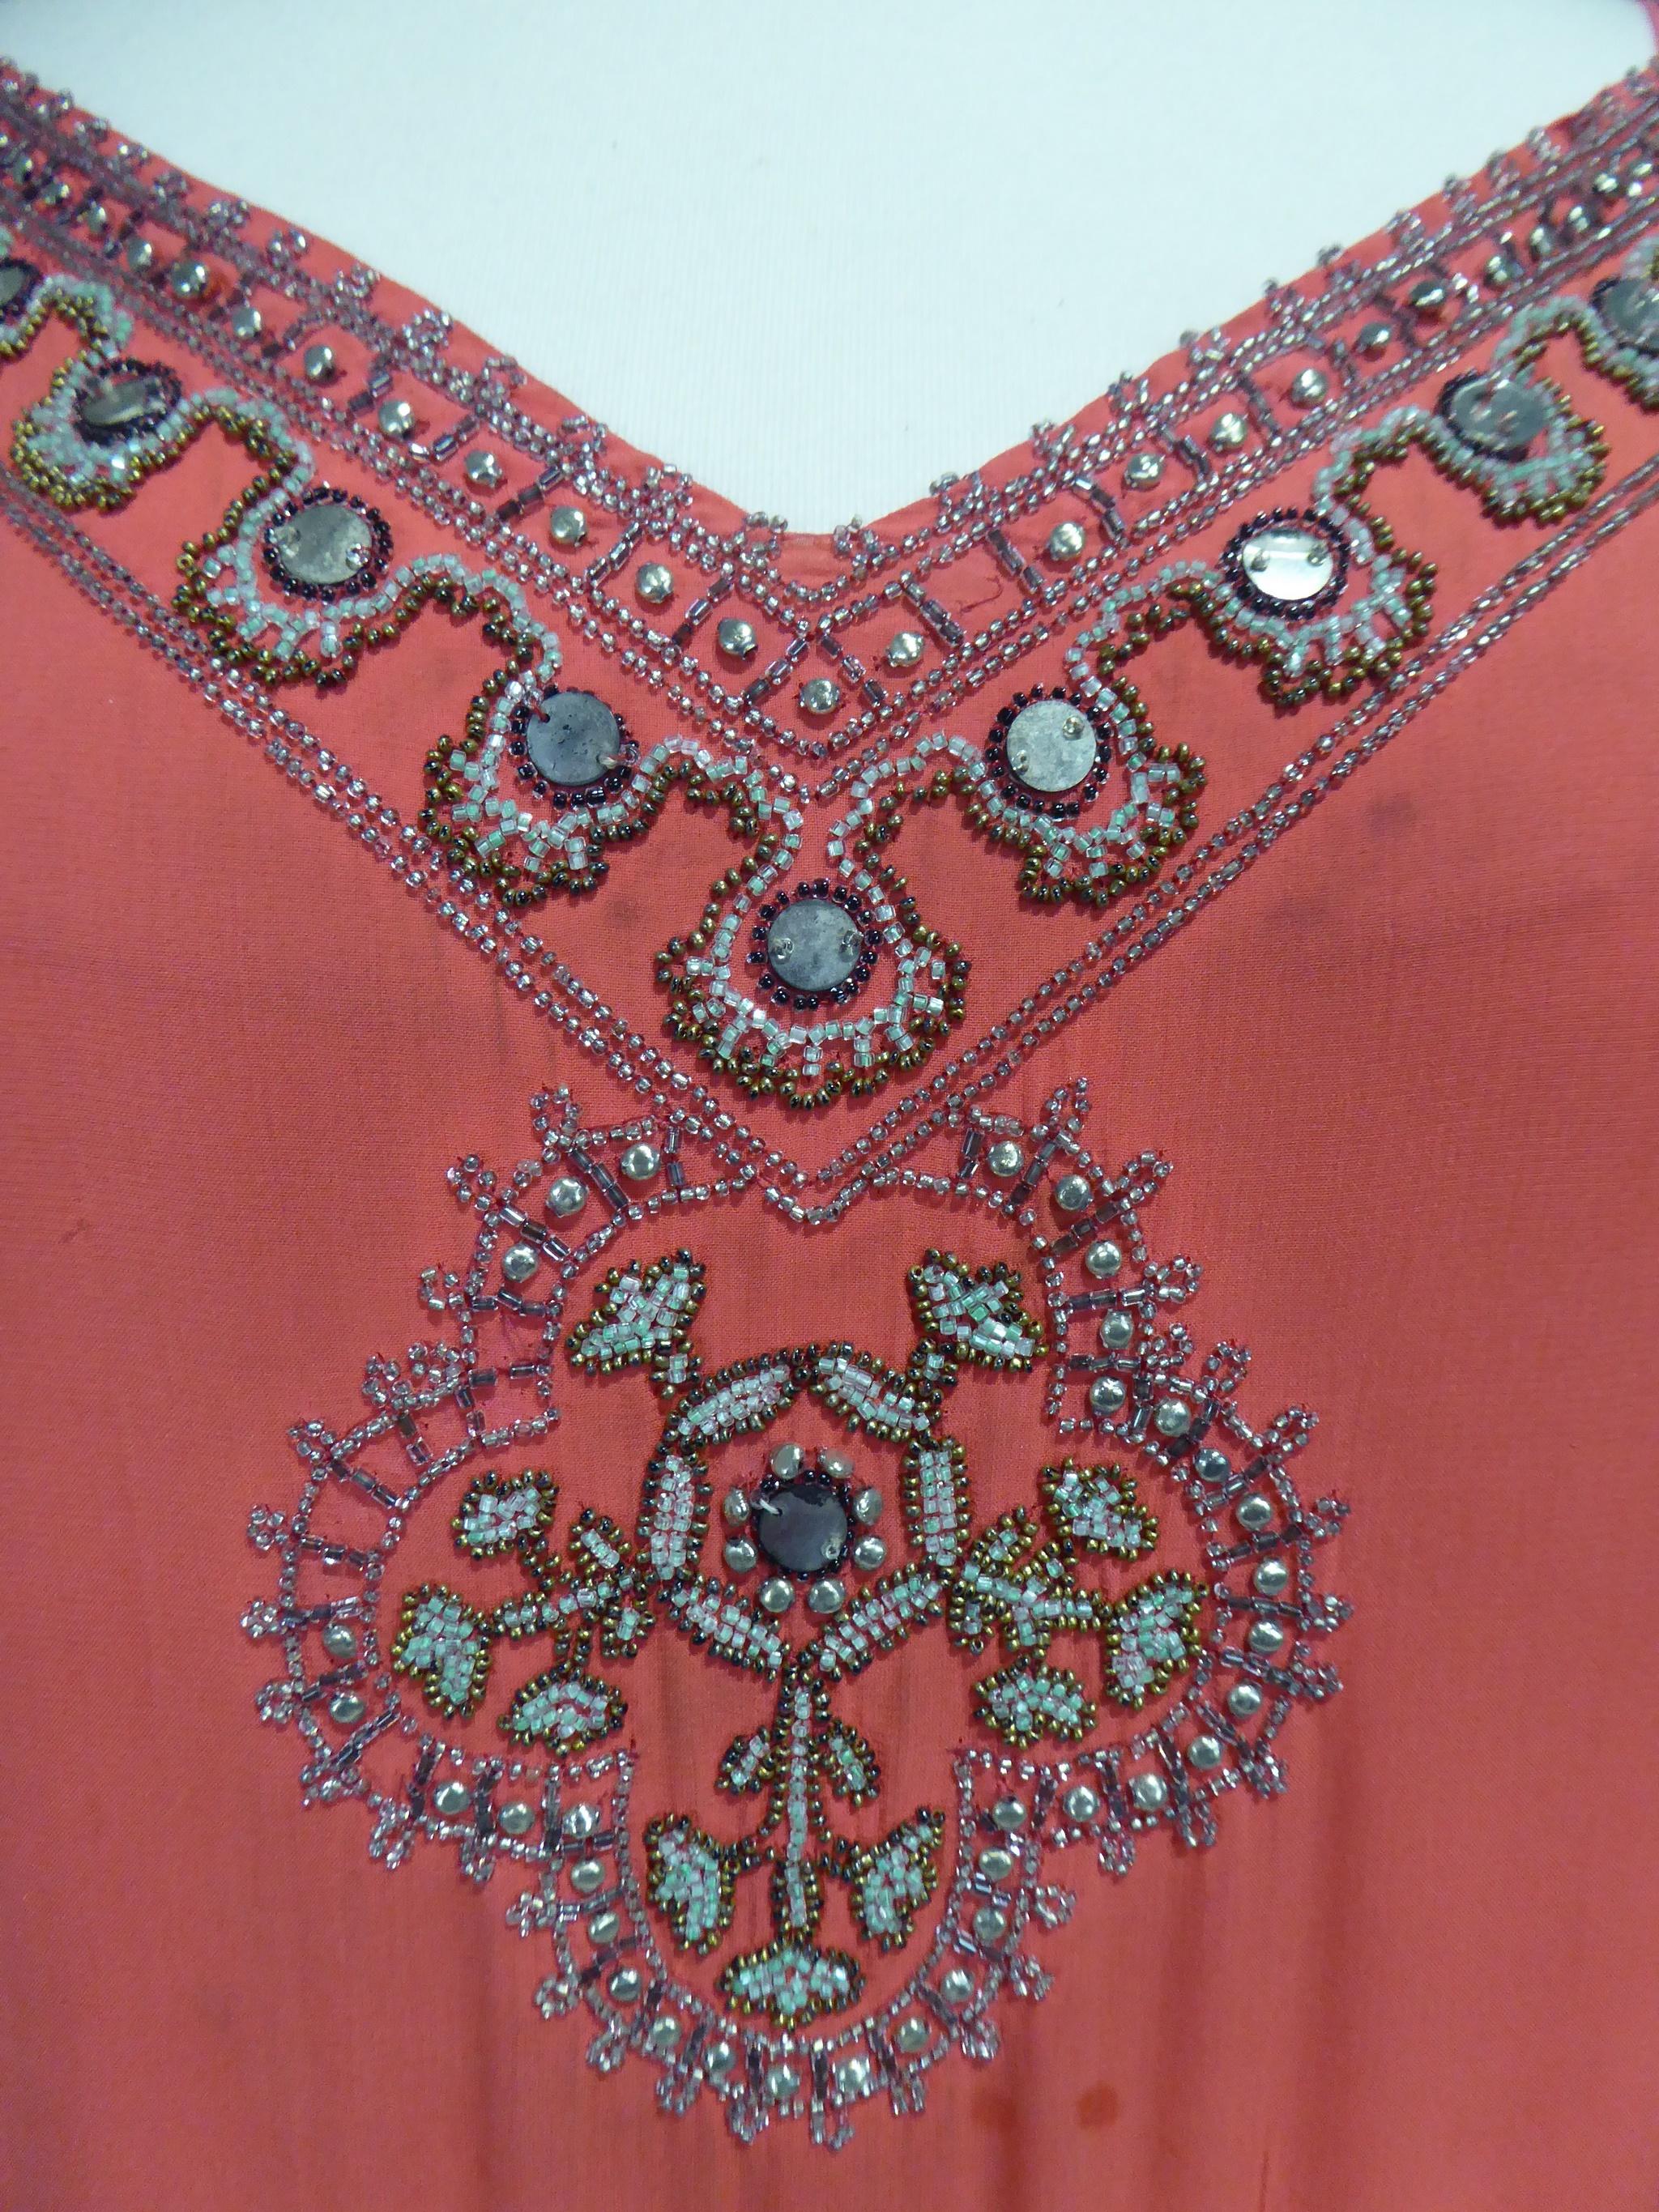 Um 1925
Frankreich

Ballkleid oder Flapper-Kleid aus korallfarbenem Seiden-Crêpe:: bestickt mit Perlen und Spiegeln aus den Roaring Twenties. Zwei lange ärmellose Bahnen mit passendem Unterkleid sind an den Seiten des stark ausgeschnittenen Kleides